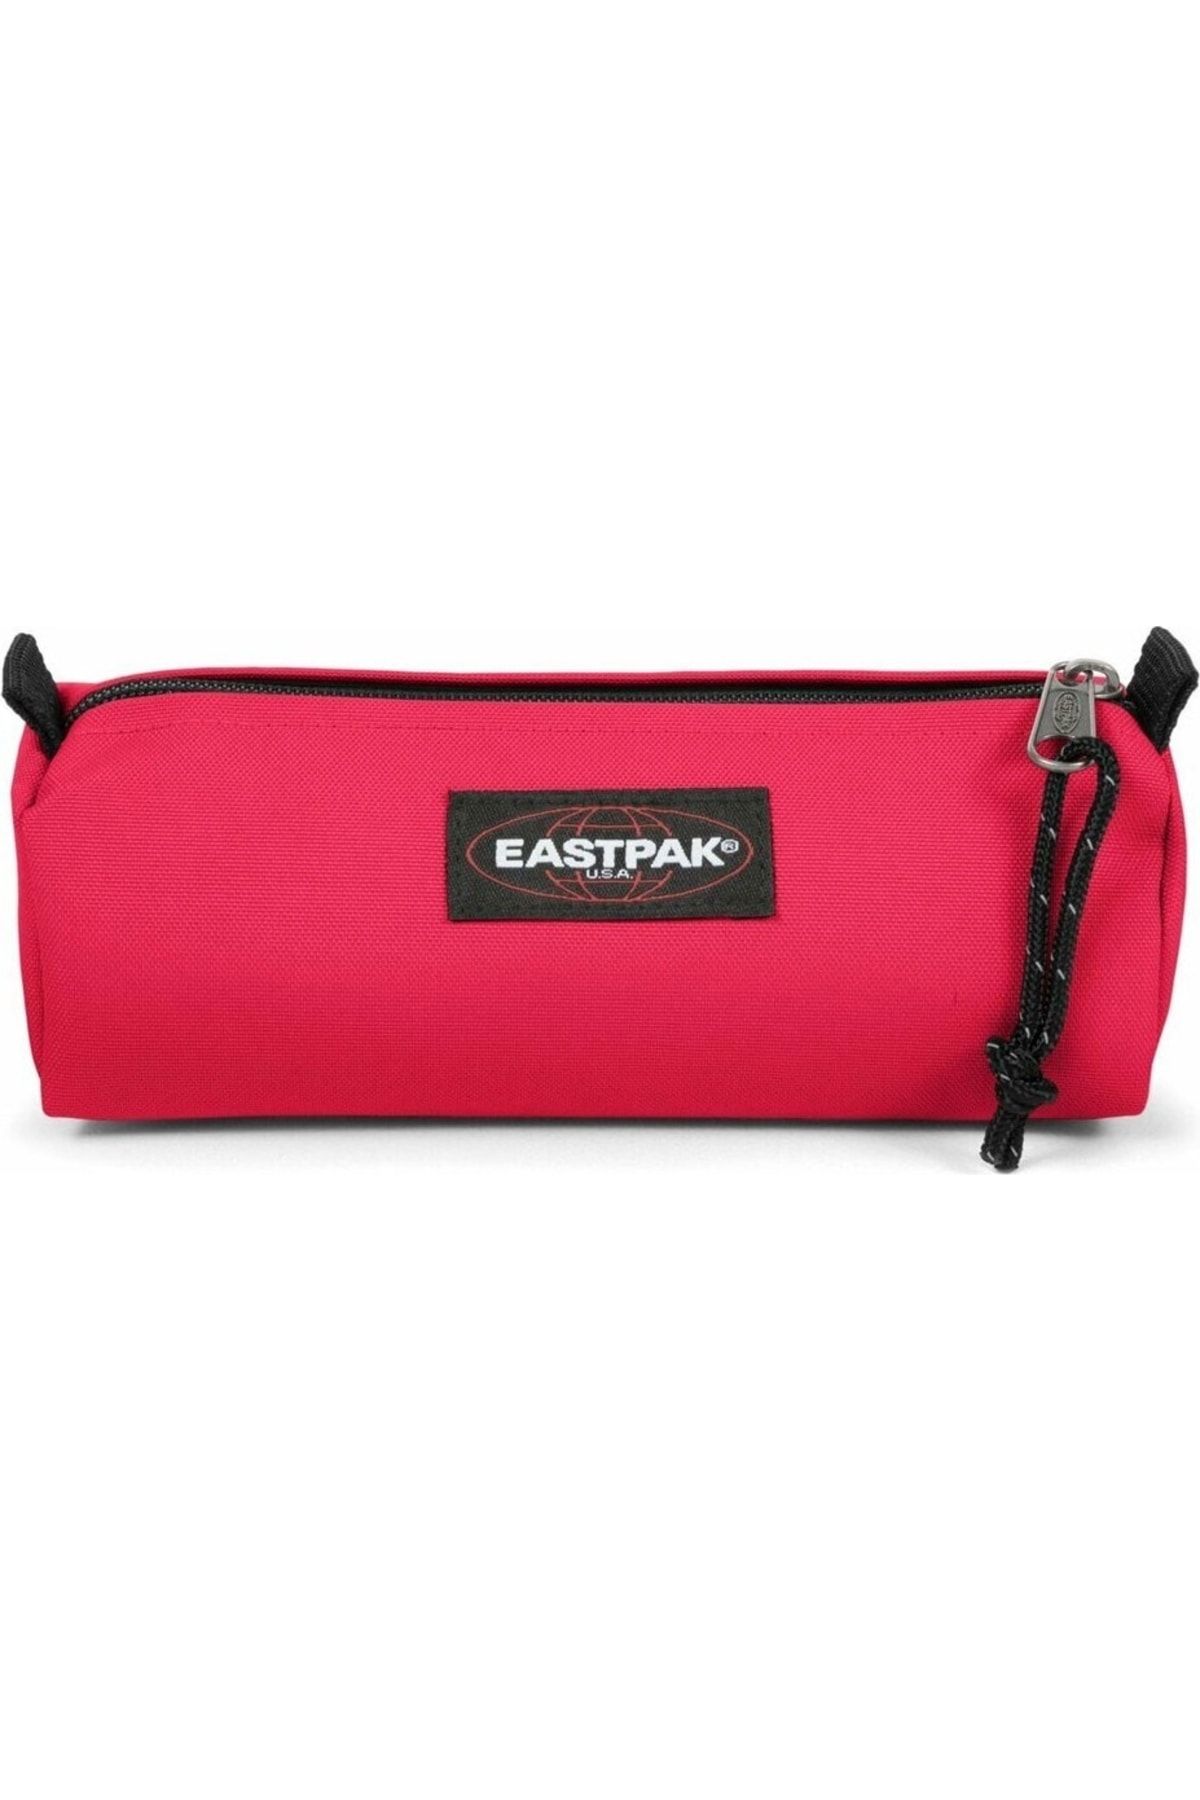 Eastpak Ek372g571 Benchmark Single Kalem Çantası Hibiscus Pink